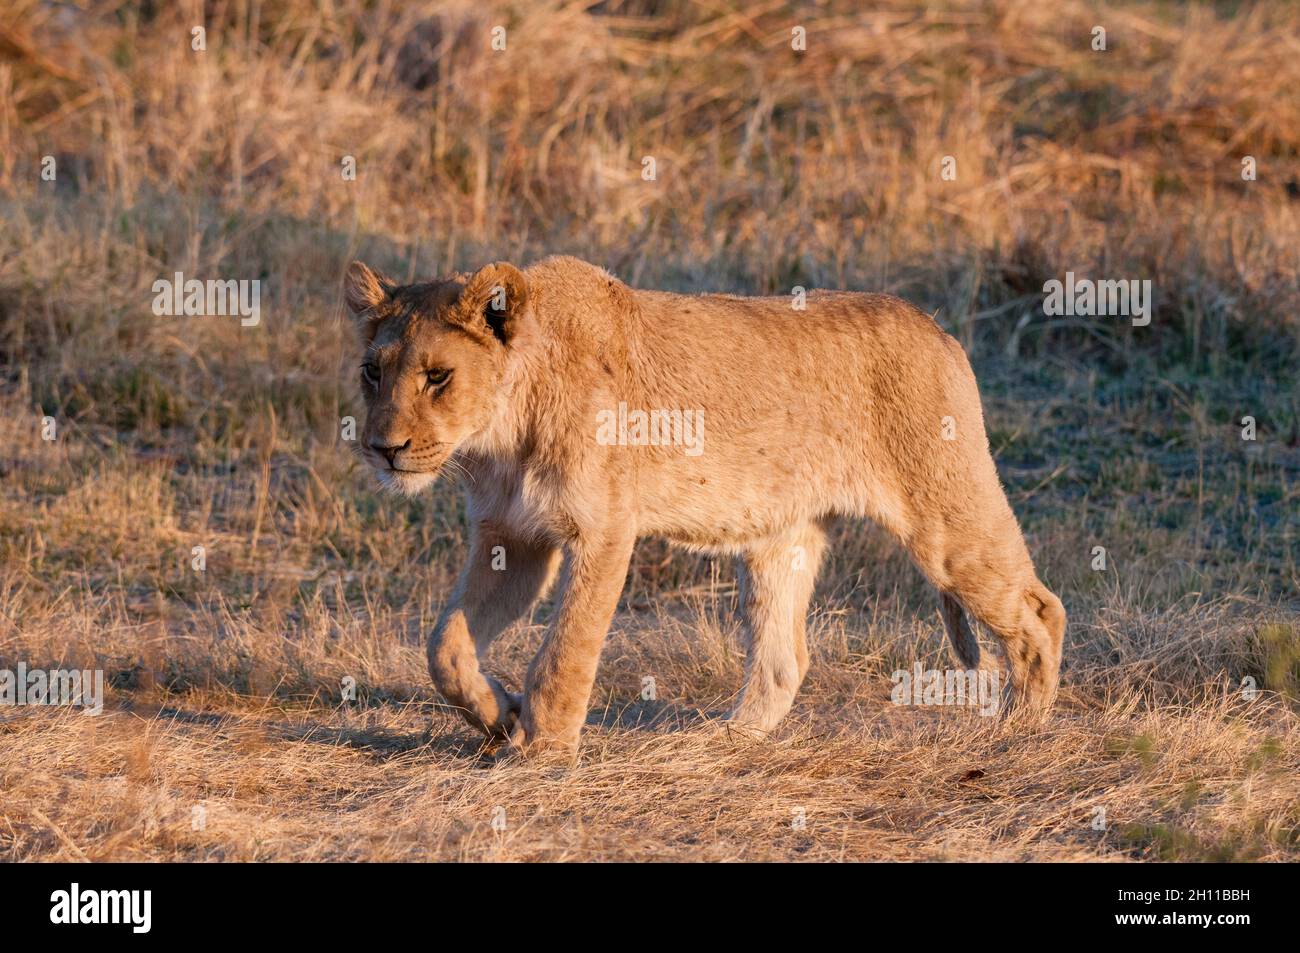 Retrato de un león joven, Panthera leo, caminando. Delta de Okavango, Botswana. Foto de stock